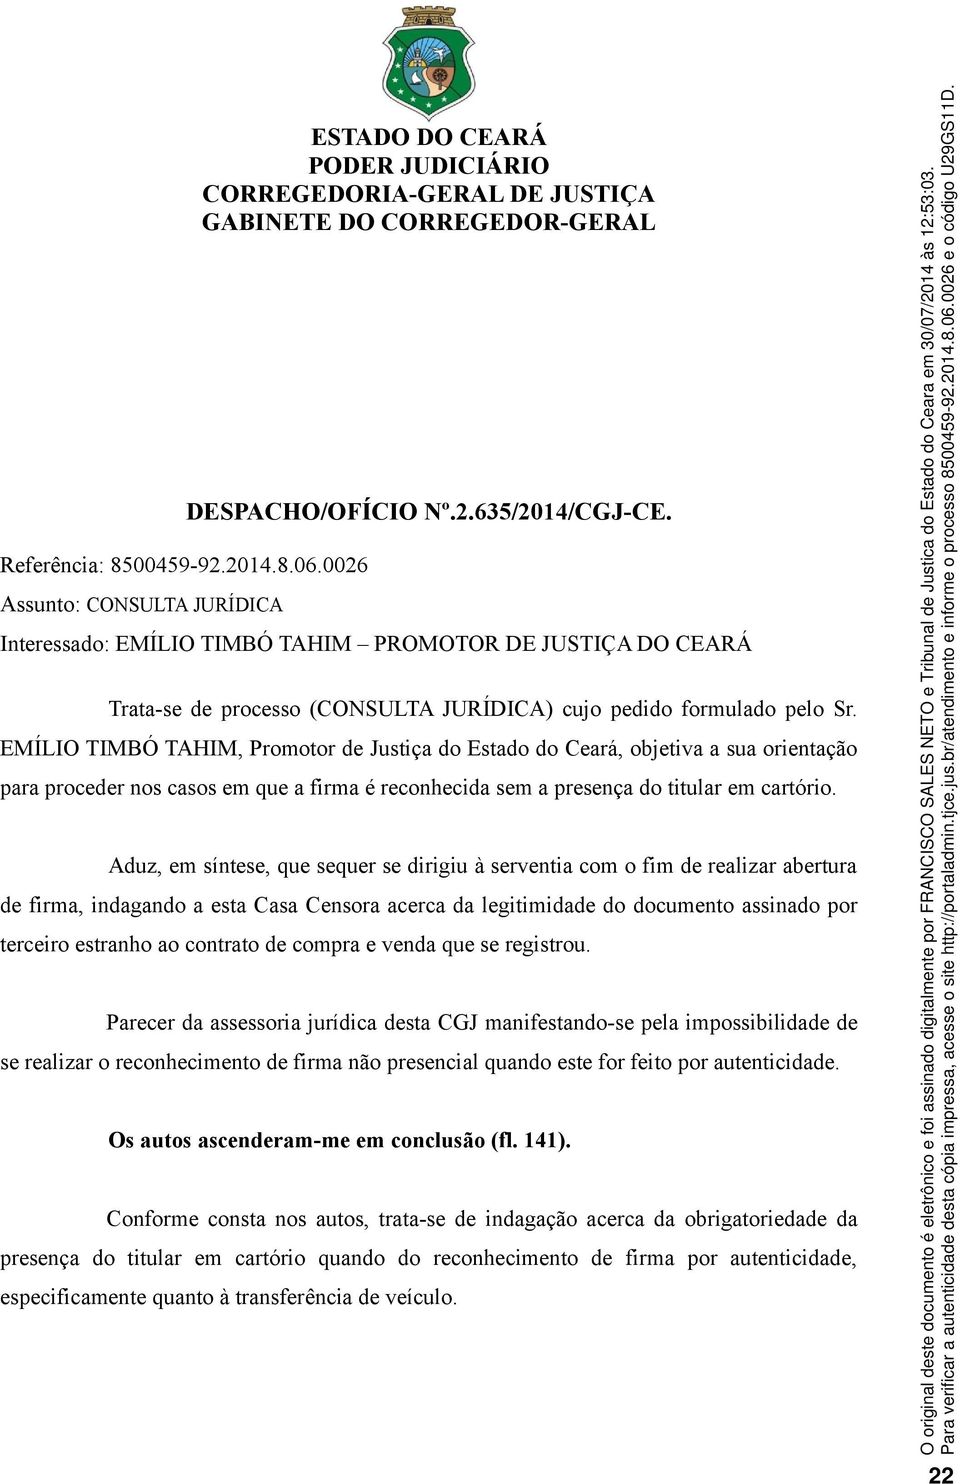 EMÍLIO TIMBÓ TAHIM, Promotor de Justiça do Estado do Ceará, objetiva a sua orientação para proceder nos casos em que a firma é reconhecida sem a presença do titular em cartório.